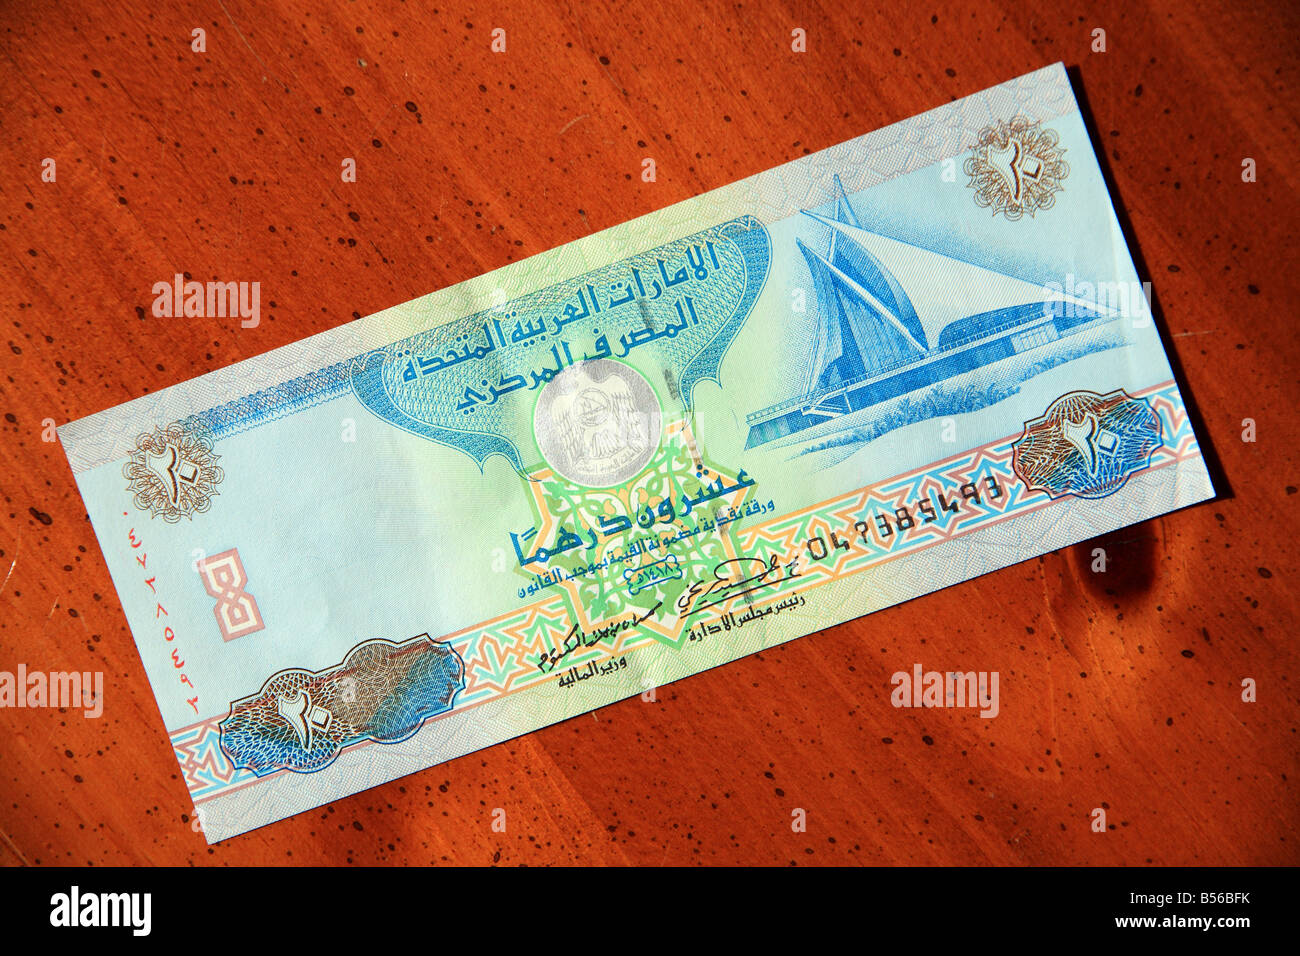 UAE United Arab Emirates twenty dirham currency note on table Stock Photo